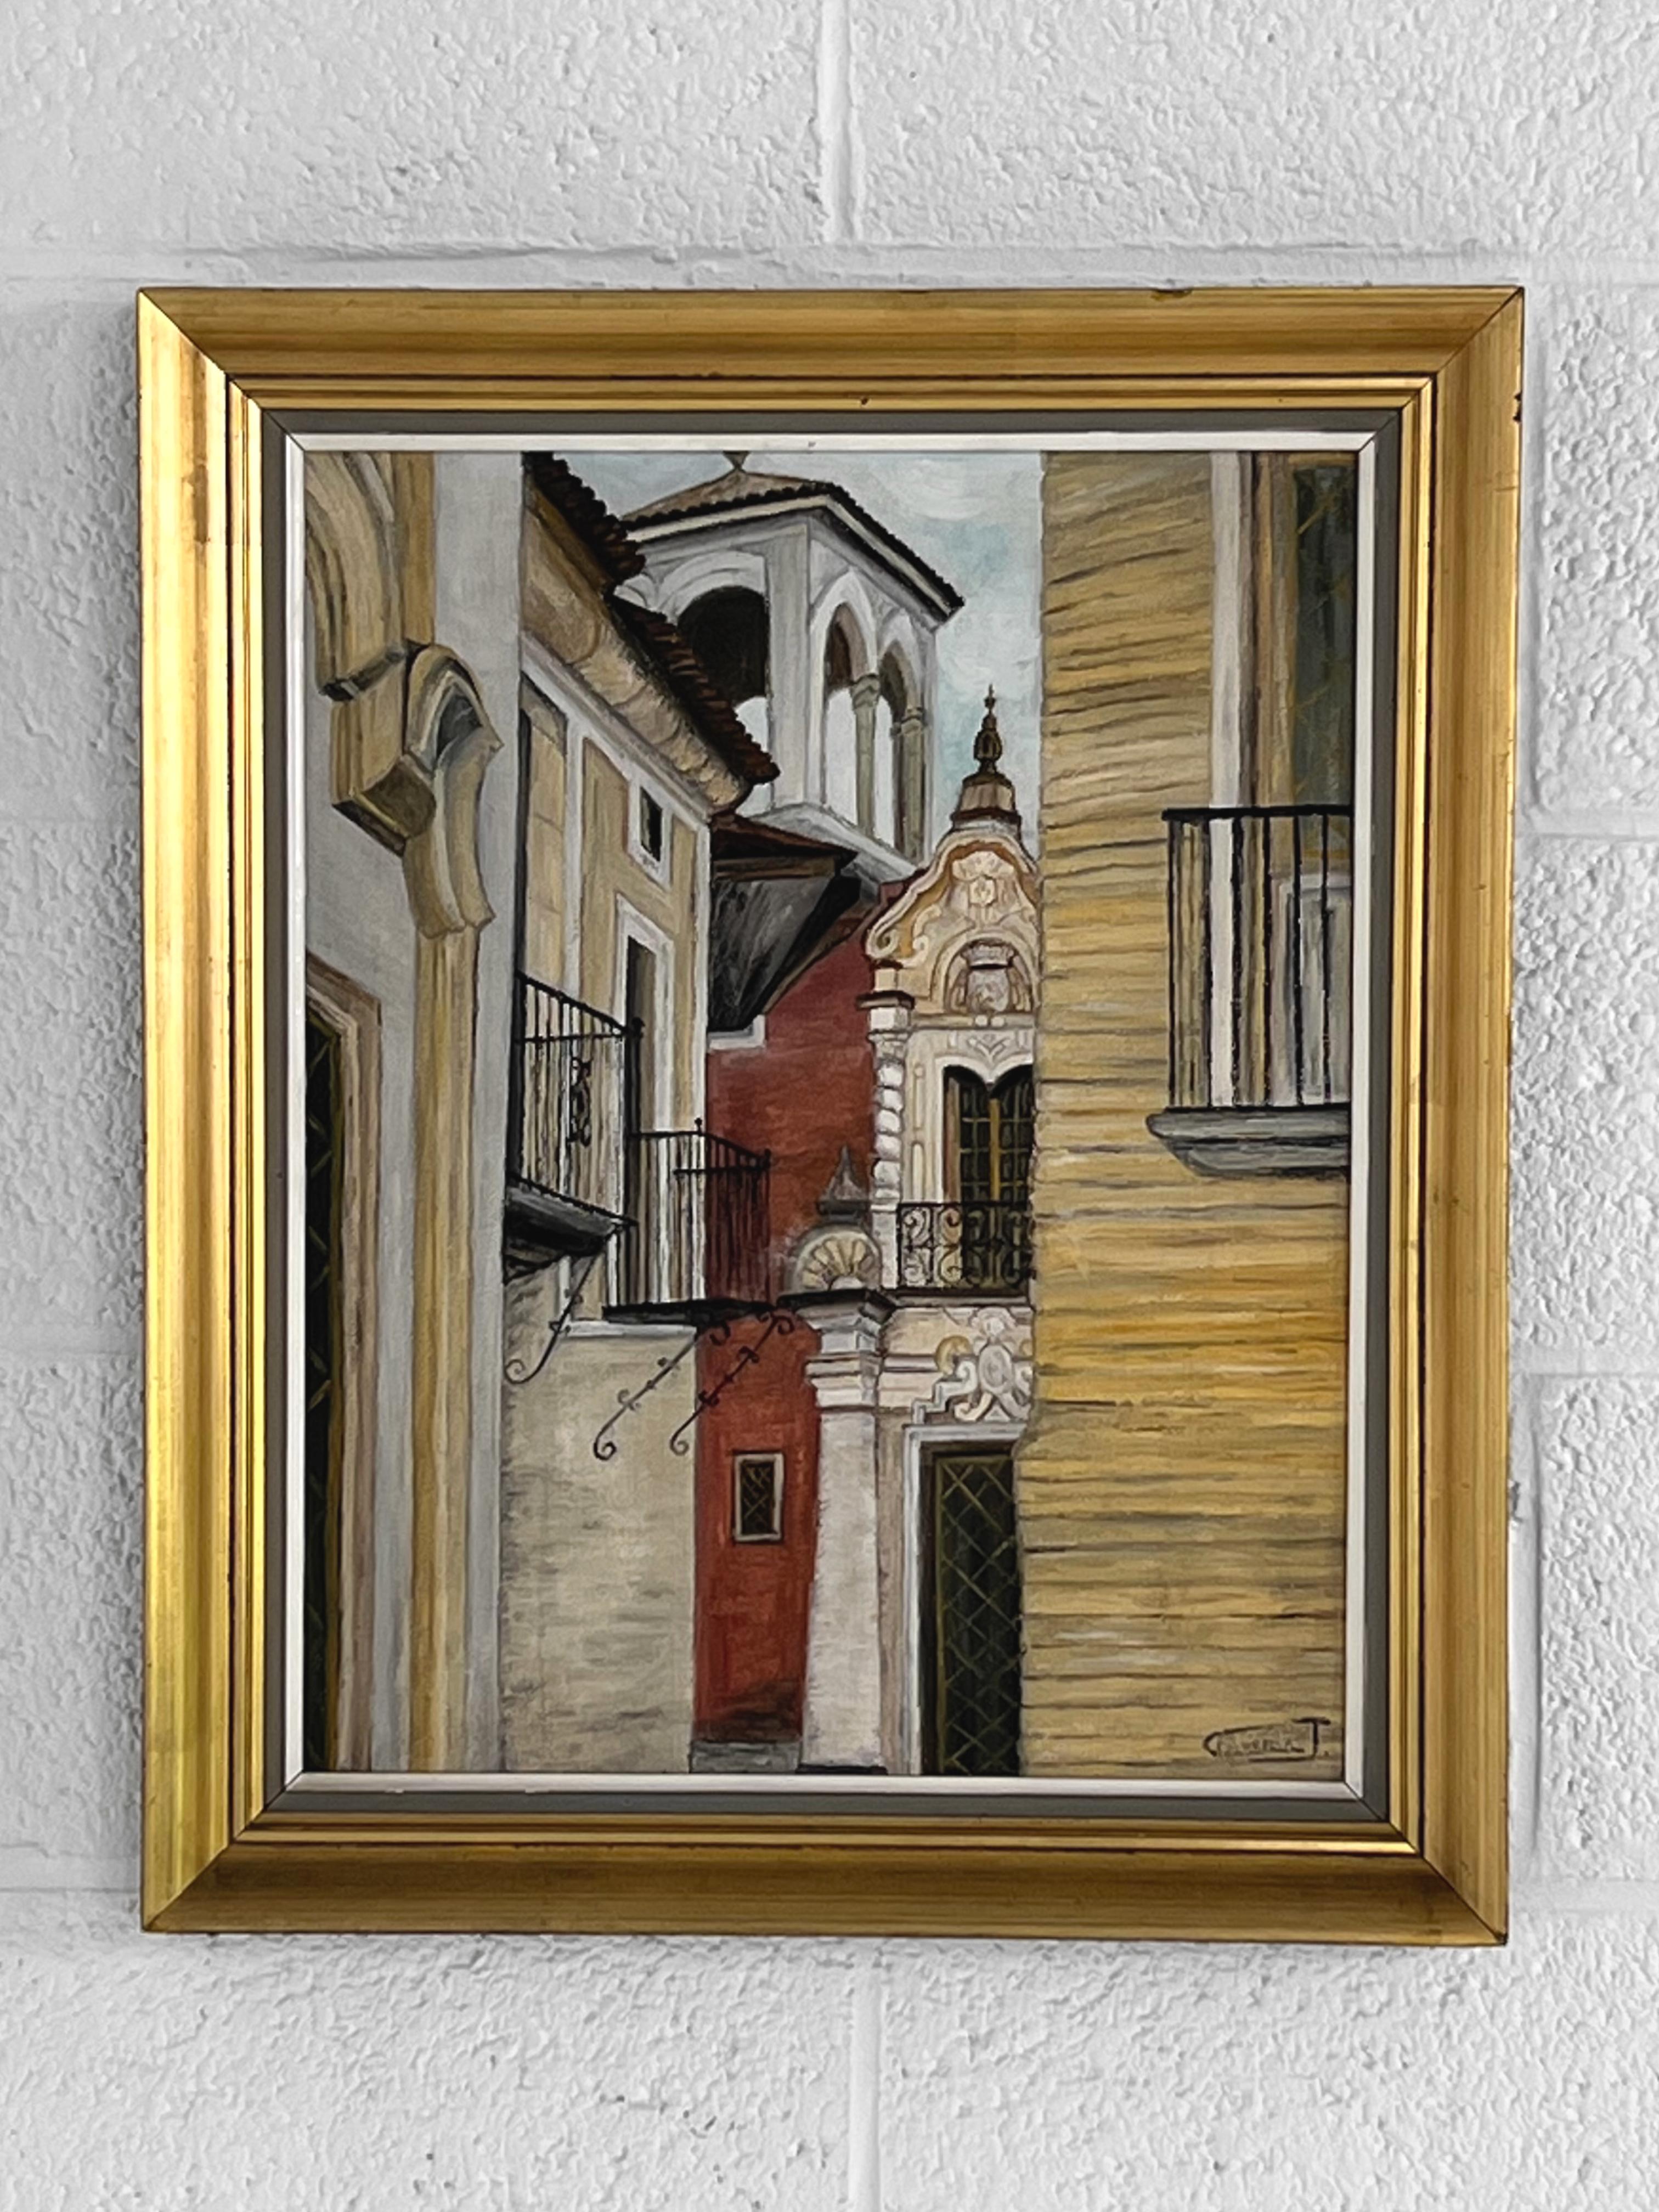 Impressionistisches Ölgemälde Architektur einer Townes mit einer Nahaufnahme einer Stadt, insbesondere von Fenstern, Balkonen und Glockenturm. Schwarze Lackierung und vergoldete Holzstruktur.